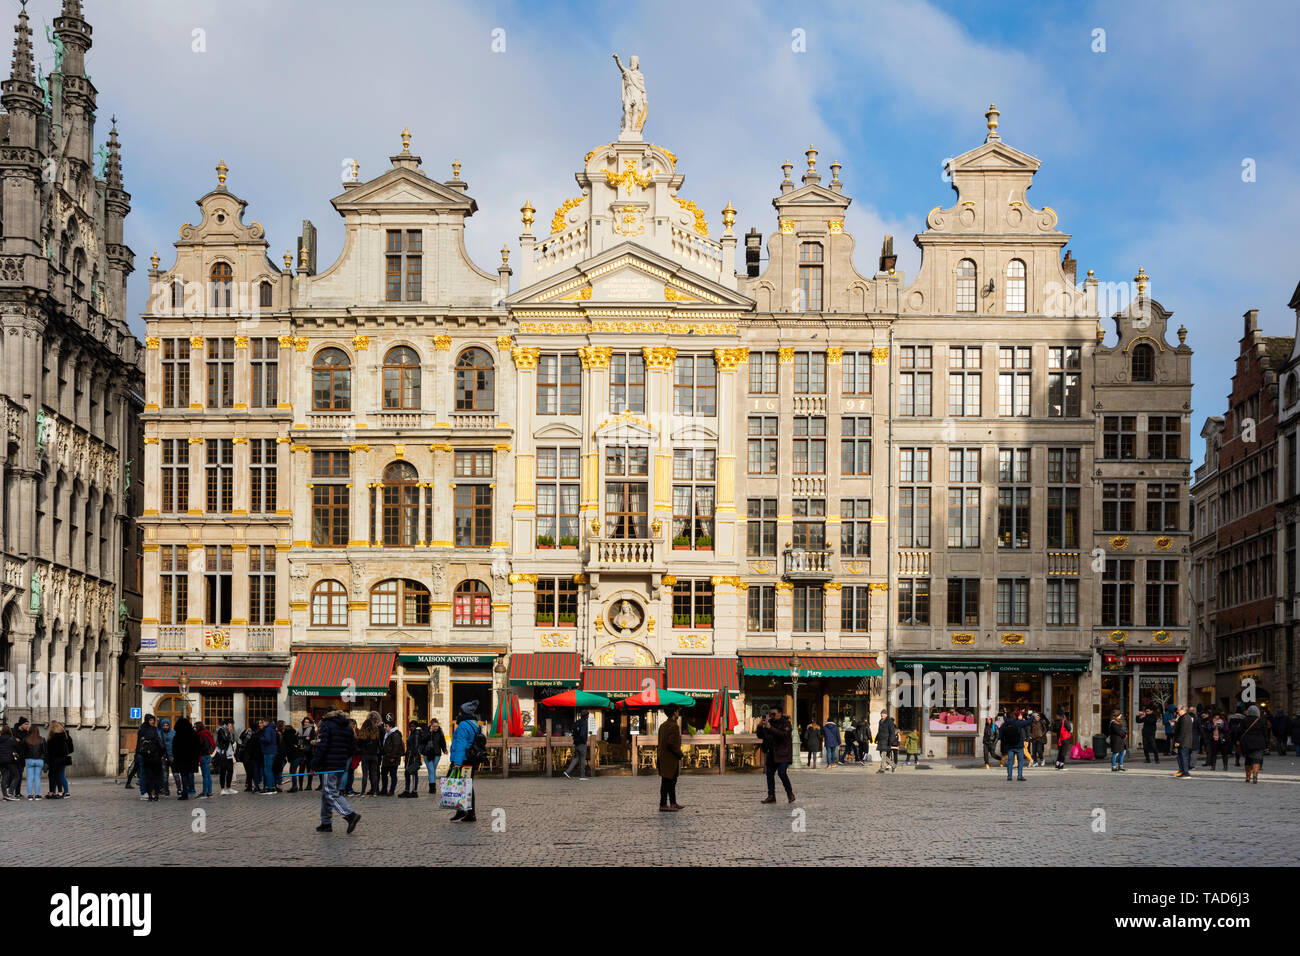 Belgique, Bruxelles, Grand Place, maisons de guilde Banque D'Images